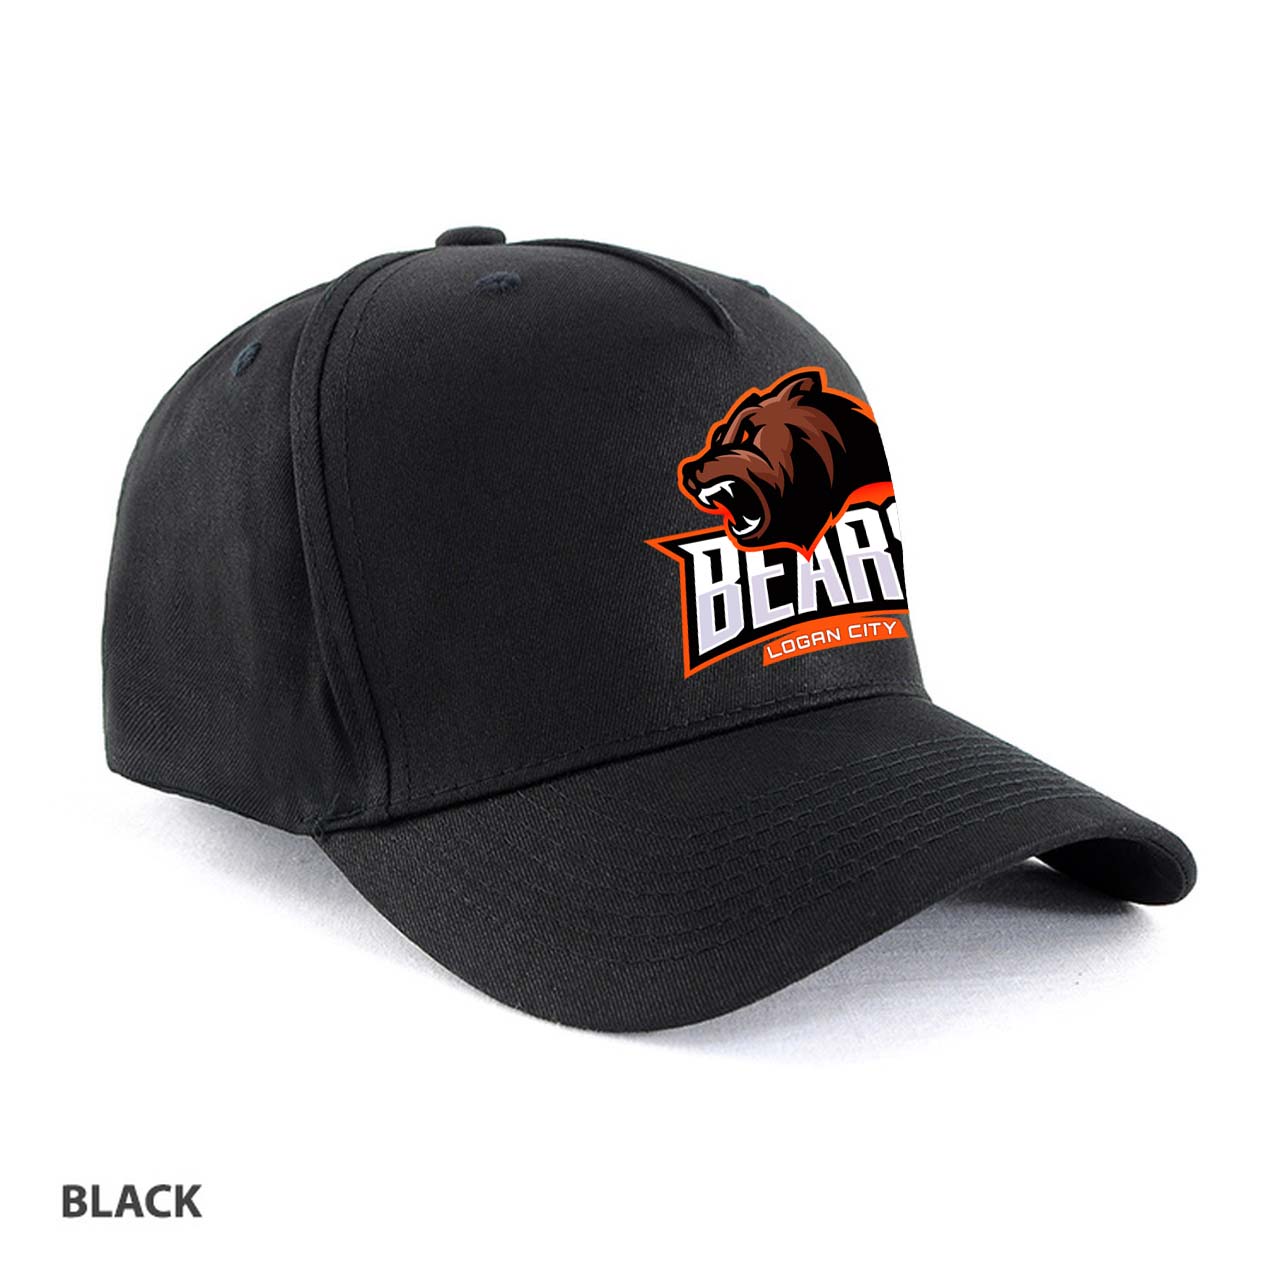 Bears Cap